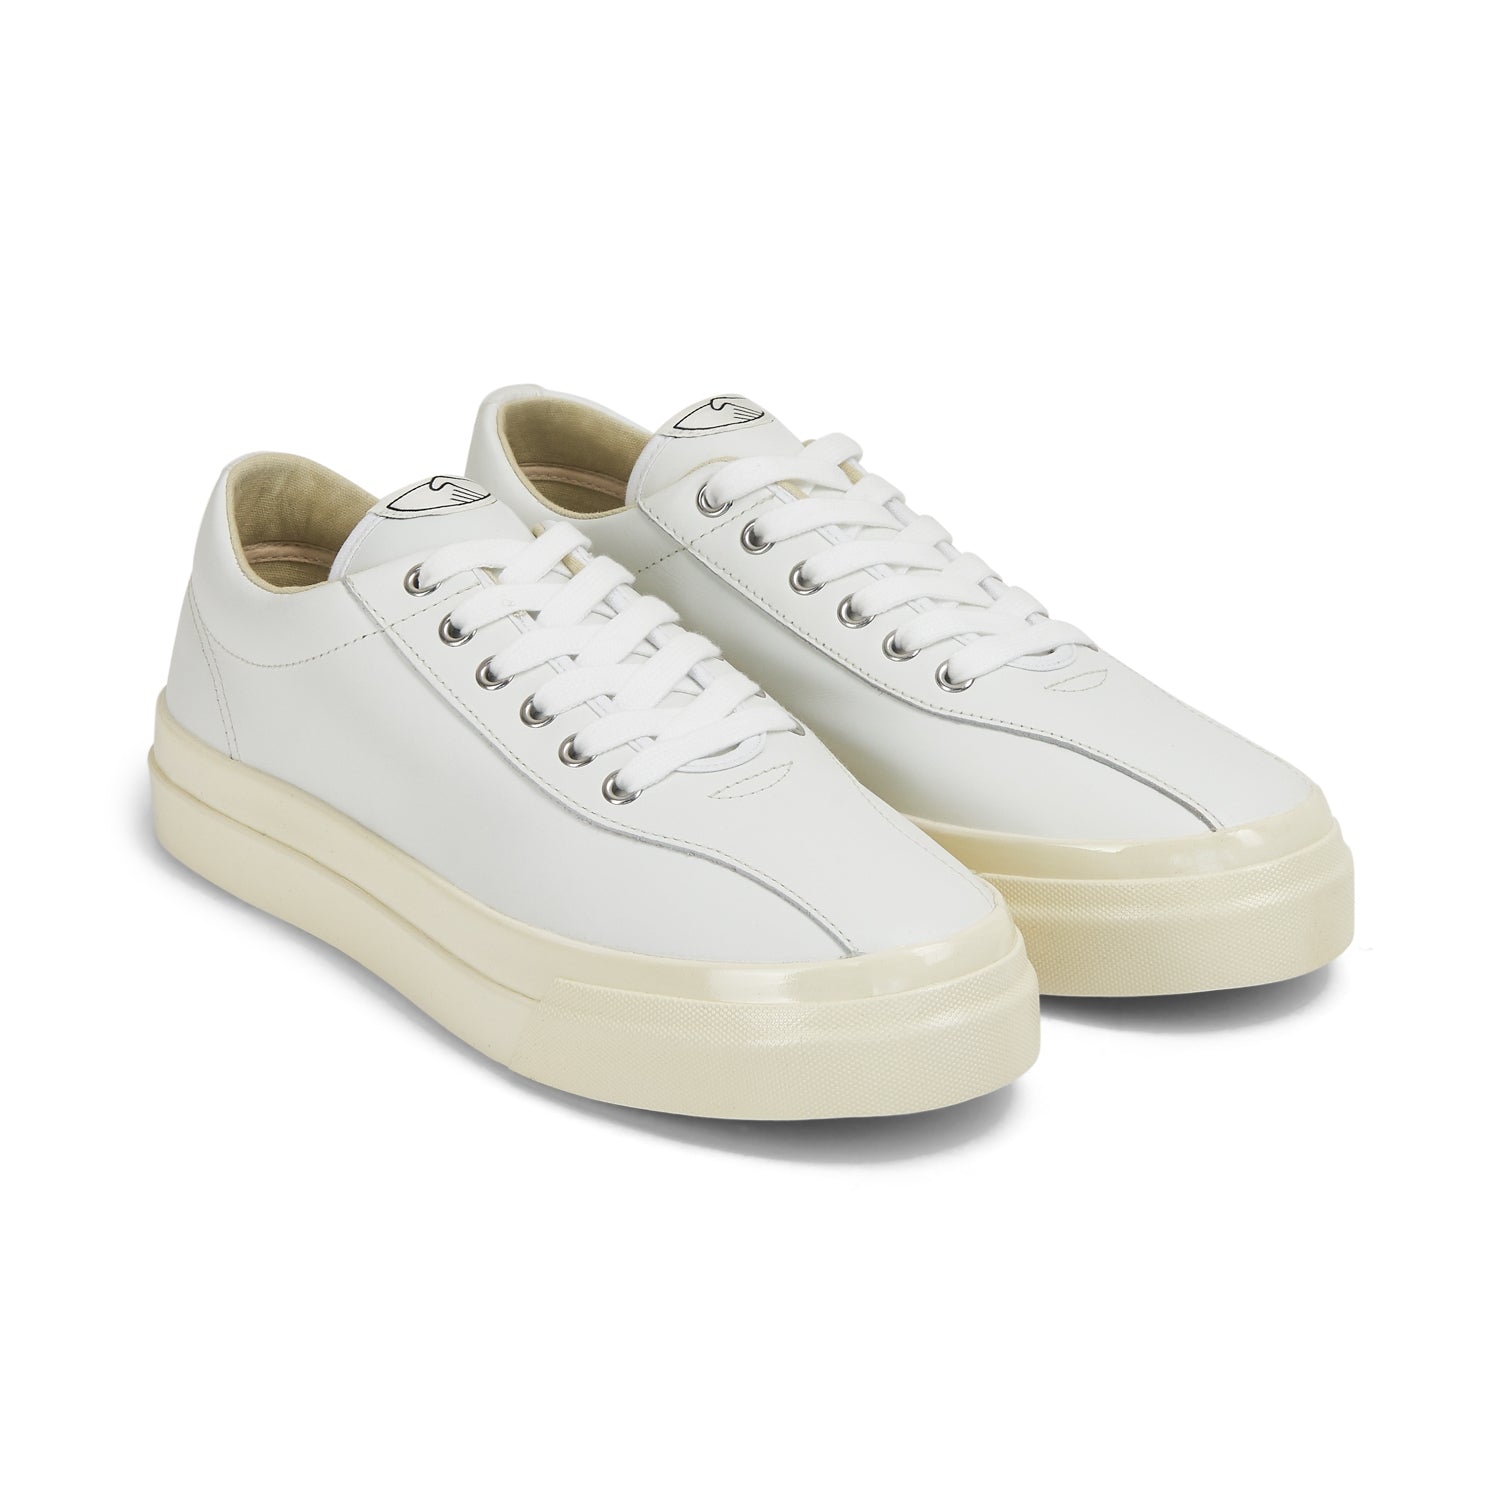 Dellow Leather White pair